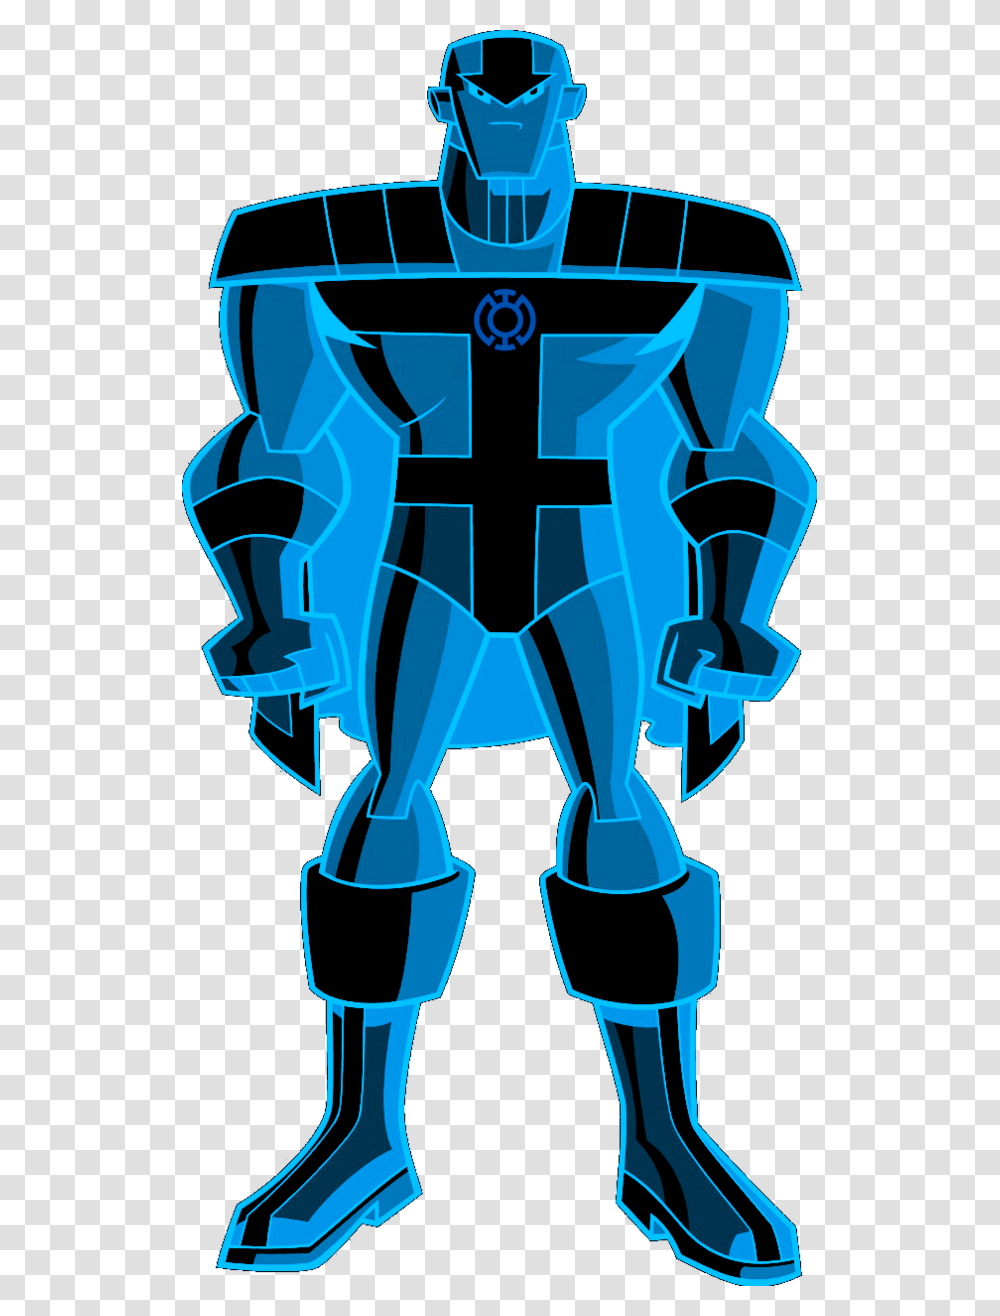 Blue Lantern Red Tornado, Robot, Emblem Transparent Png